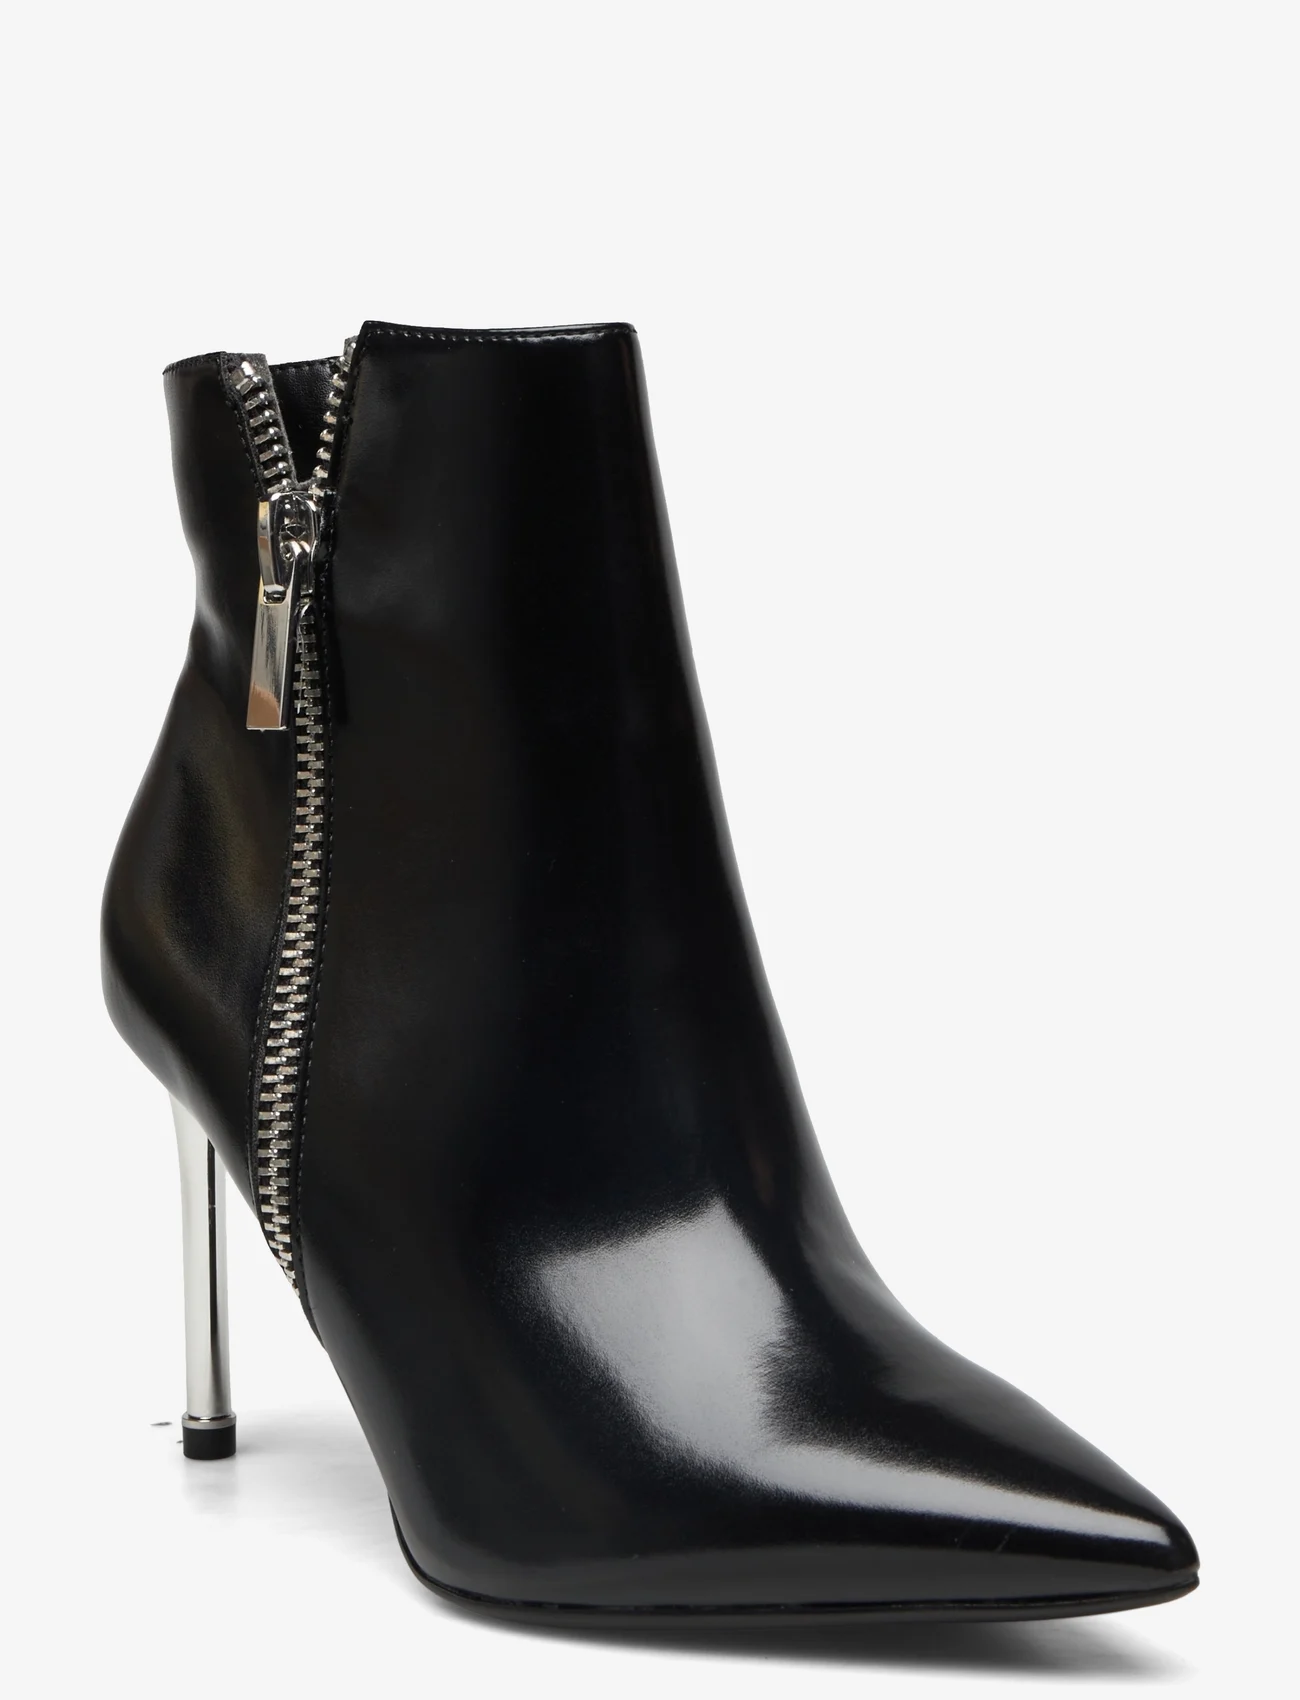 Tamaris - Women Boots - korolliset nilkkurit - black - 0